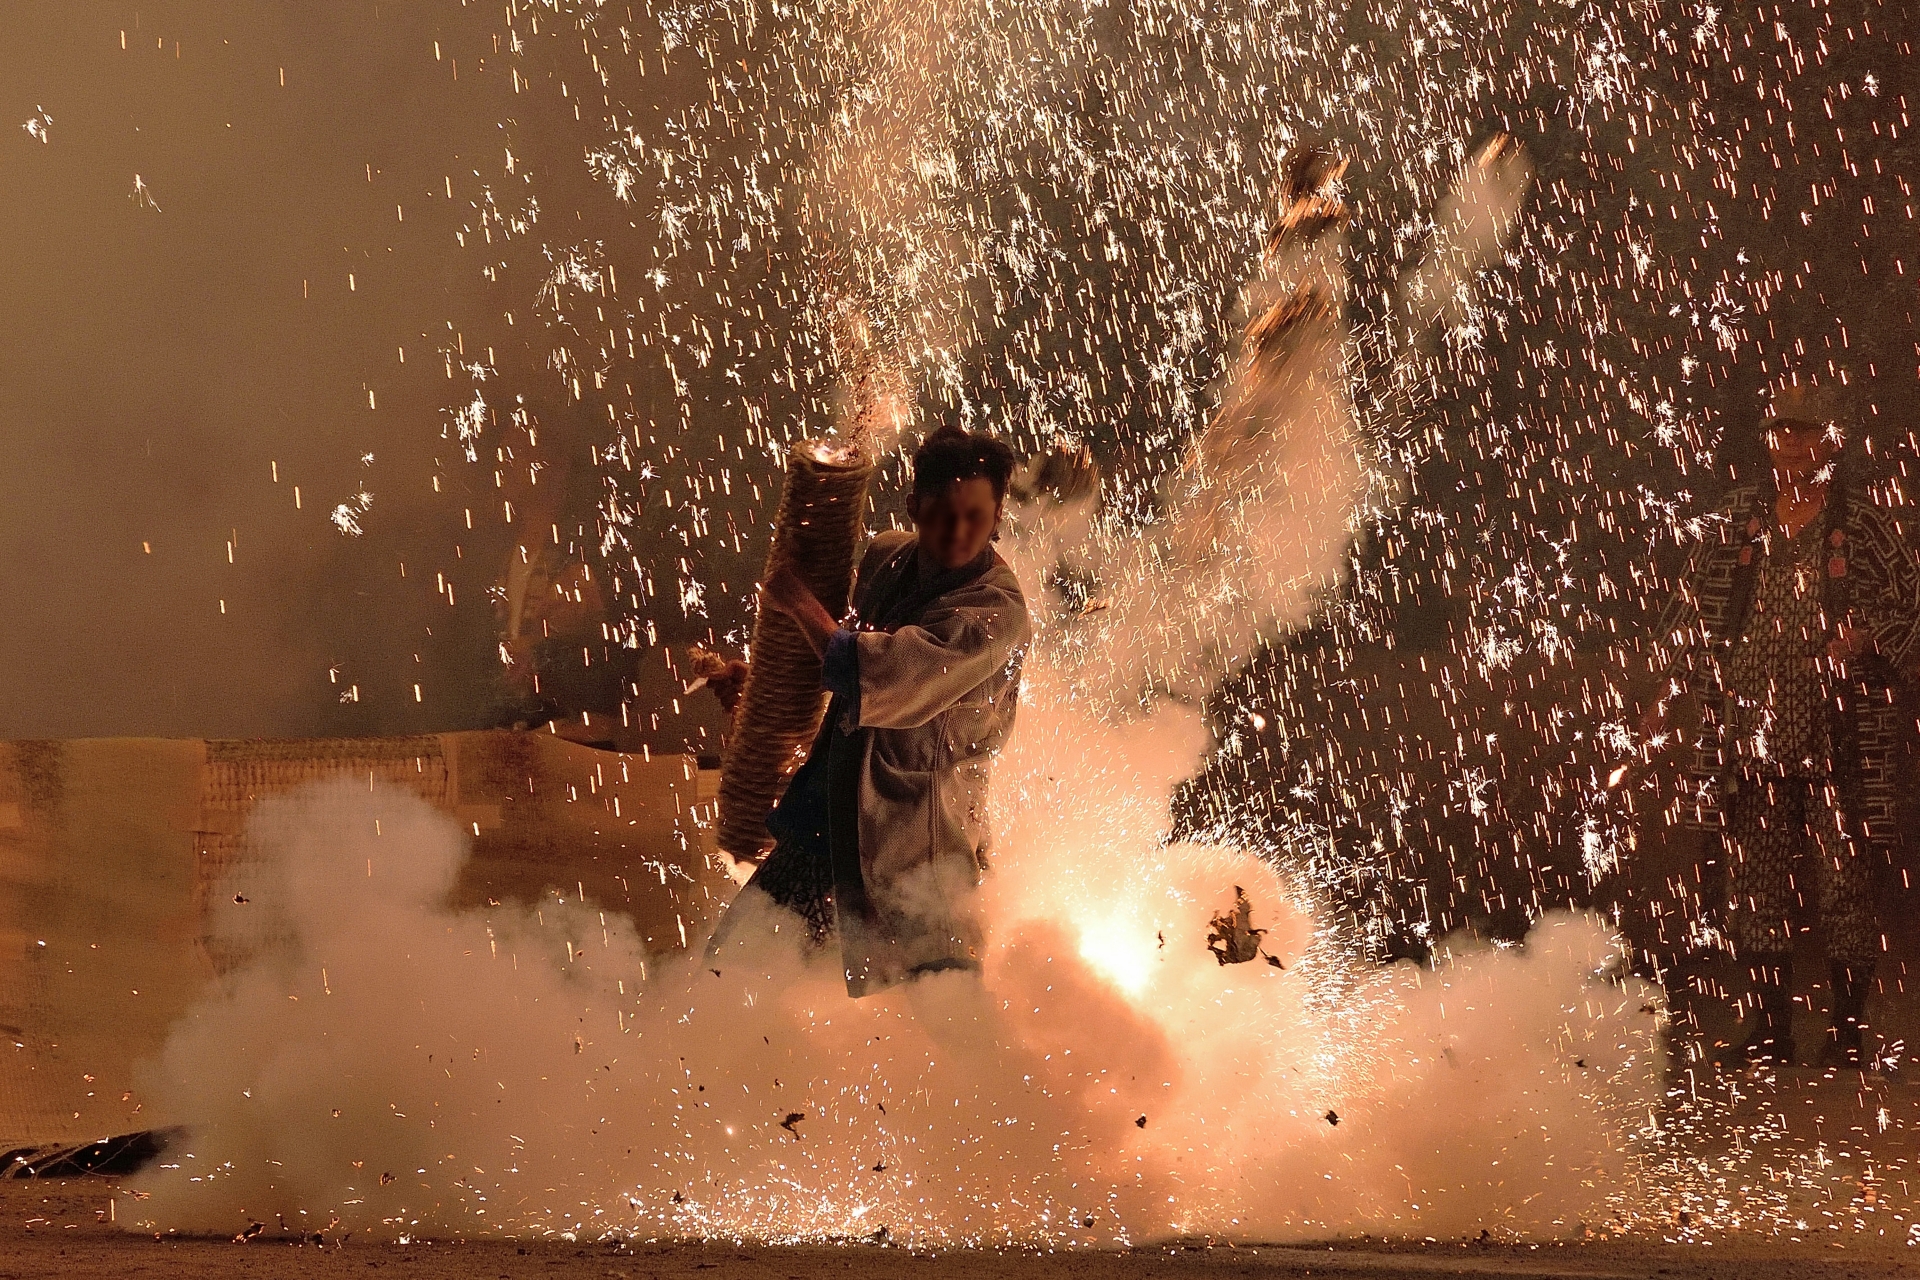 愛知県豊橋市で開催される「炎の祭典」。手筒花火が一斉放揚される「炎の舞」は圧巻